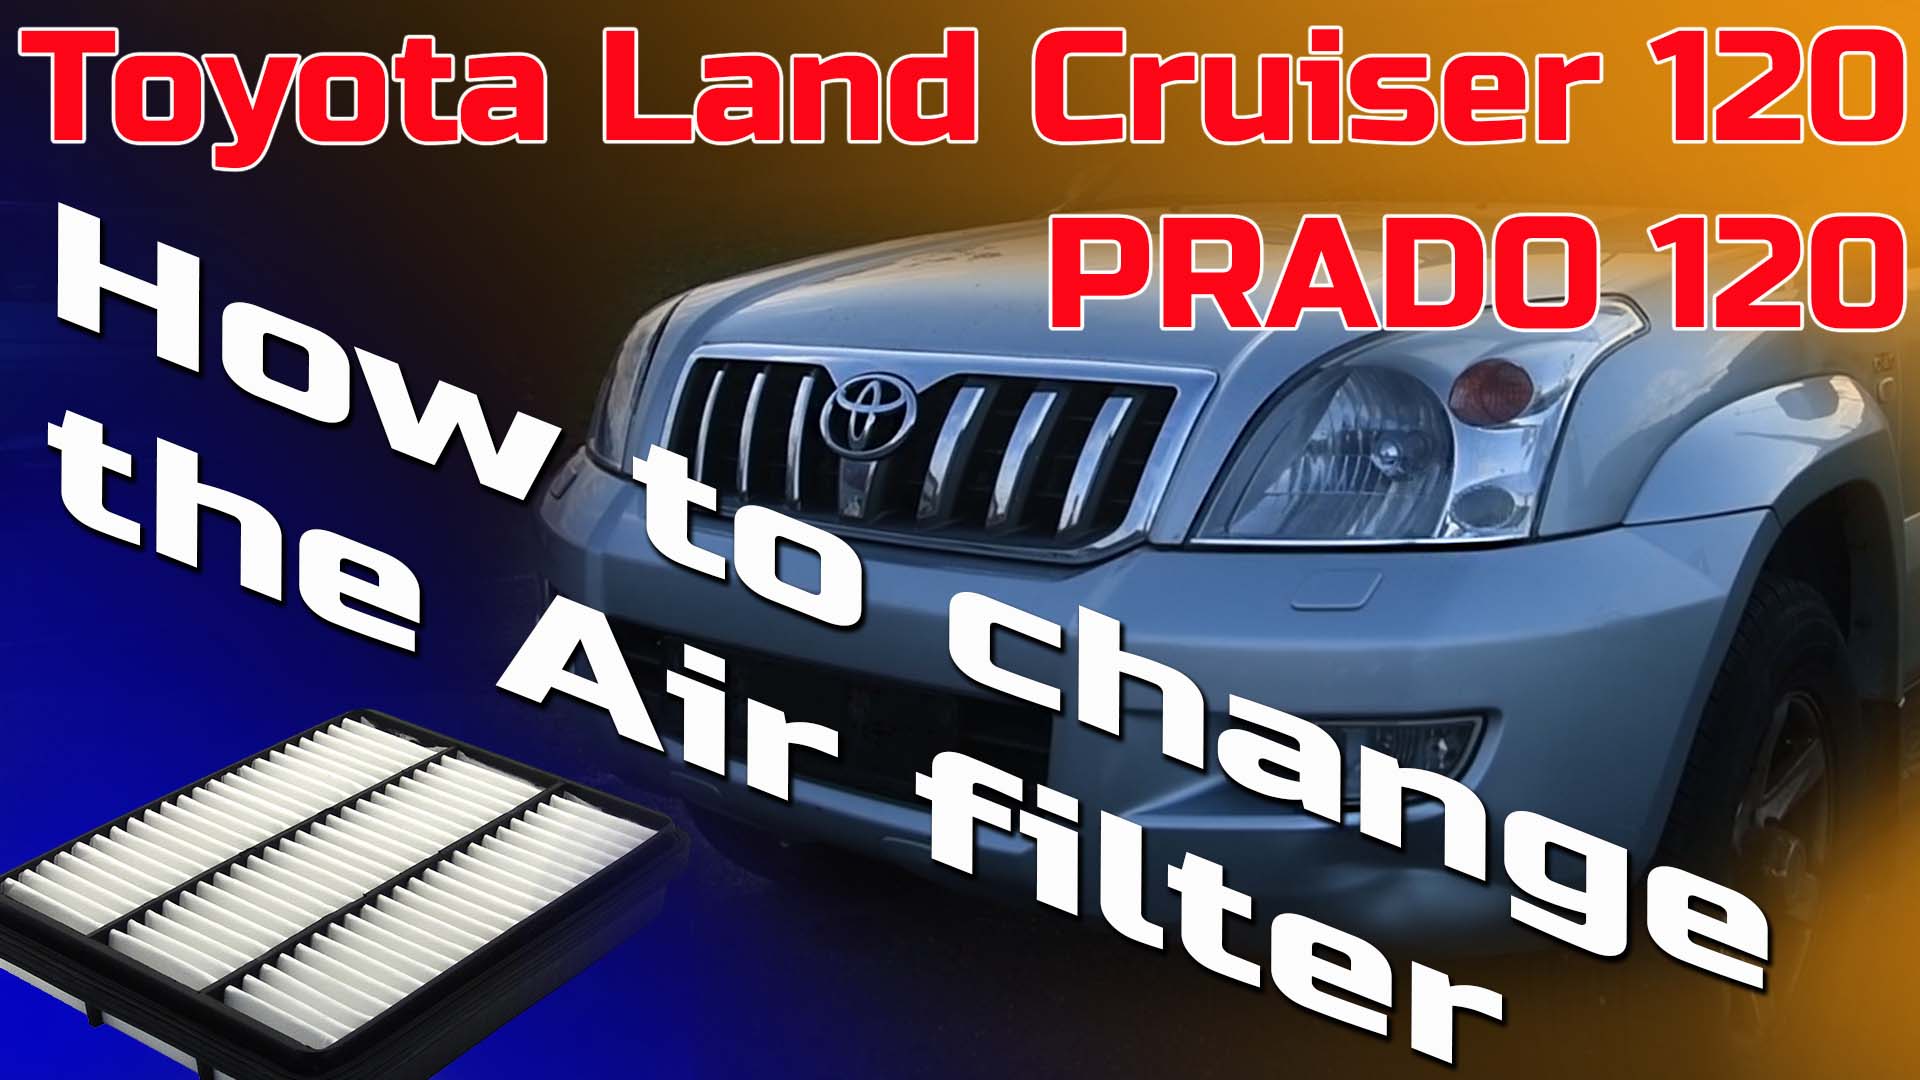 Hvordan bytte lutfilter på en Toyota Land Cruiser / PRADO 120